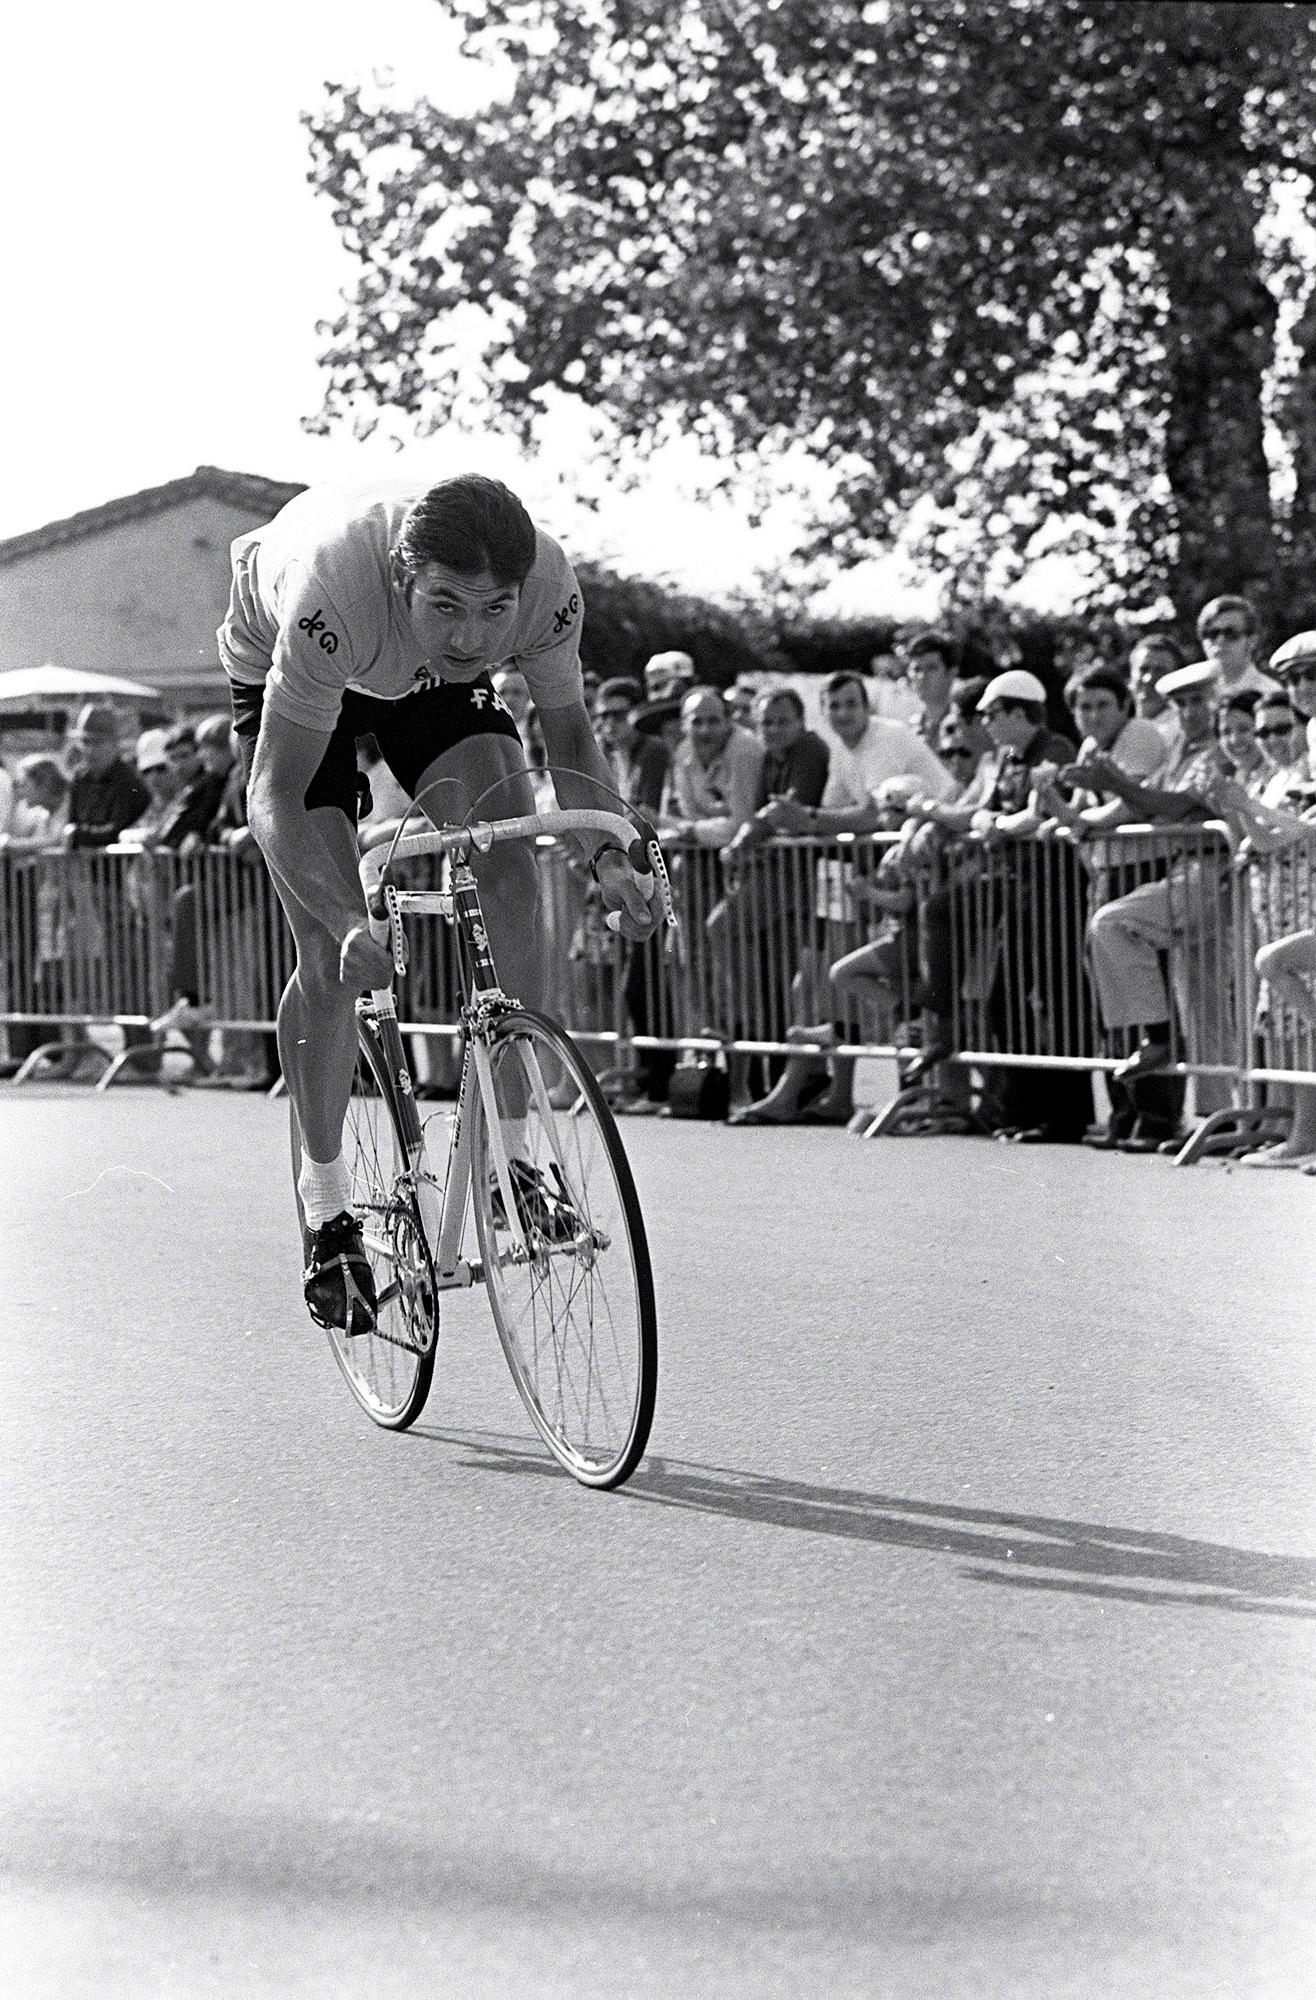 Eddy Merckx var et «uhyre» på sykkelen, minnes Dag Erik Pedersen. Her er belgieren i aksjon under Tour de France i 1970, som han vant sammenlagt med 12 minutters margin til nederlenderen Joop Zoetemelk.